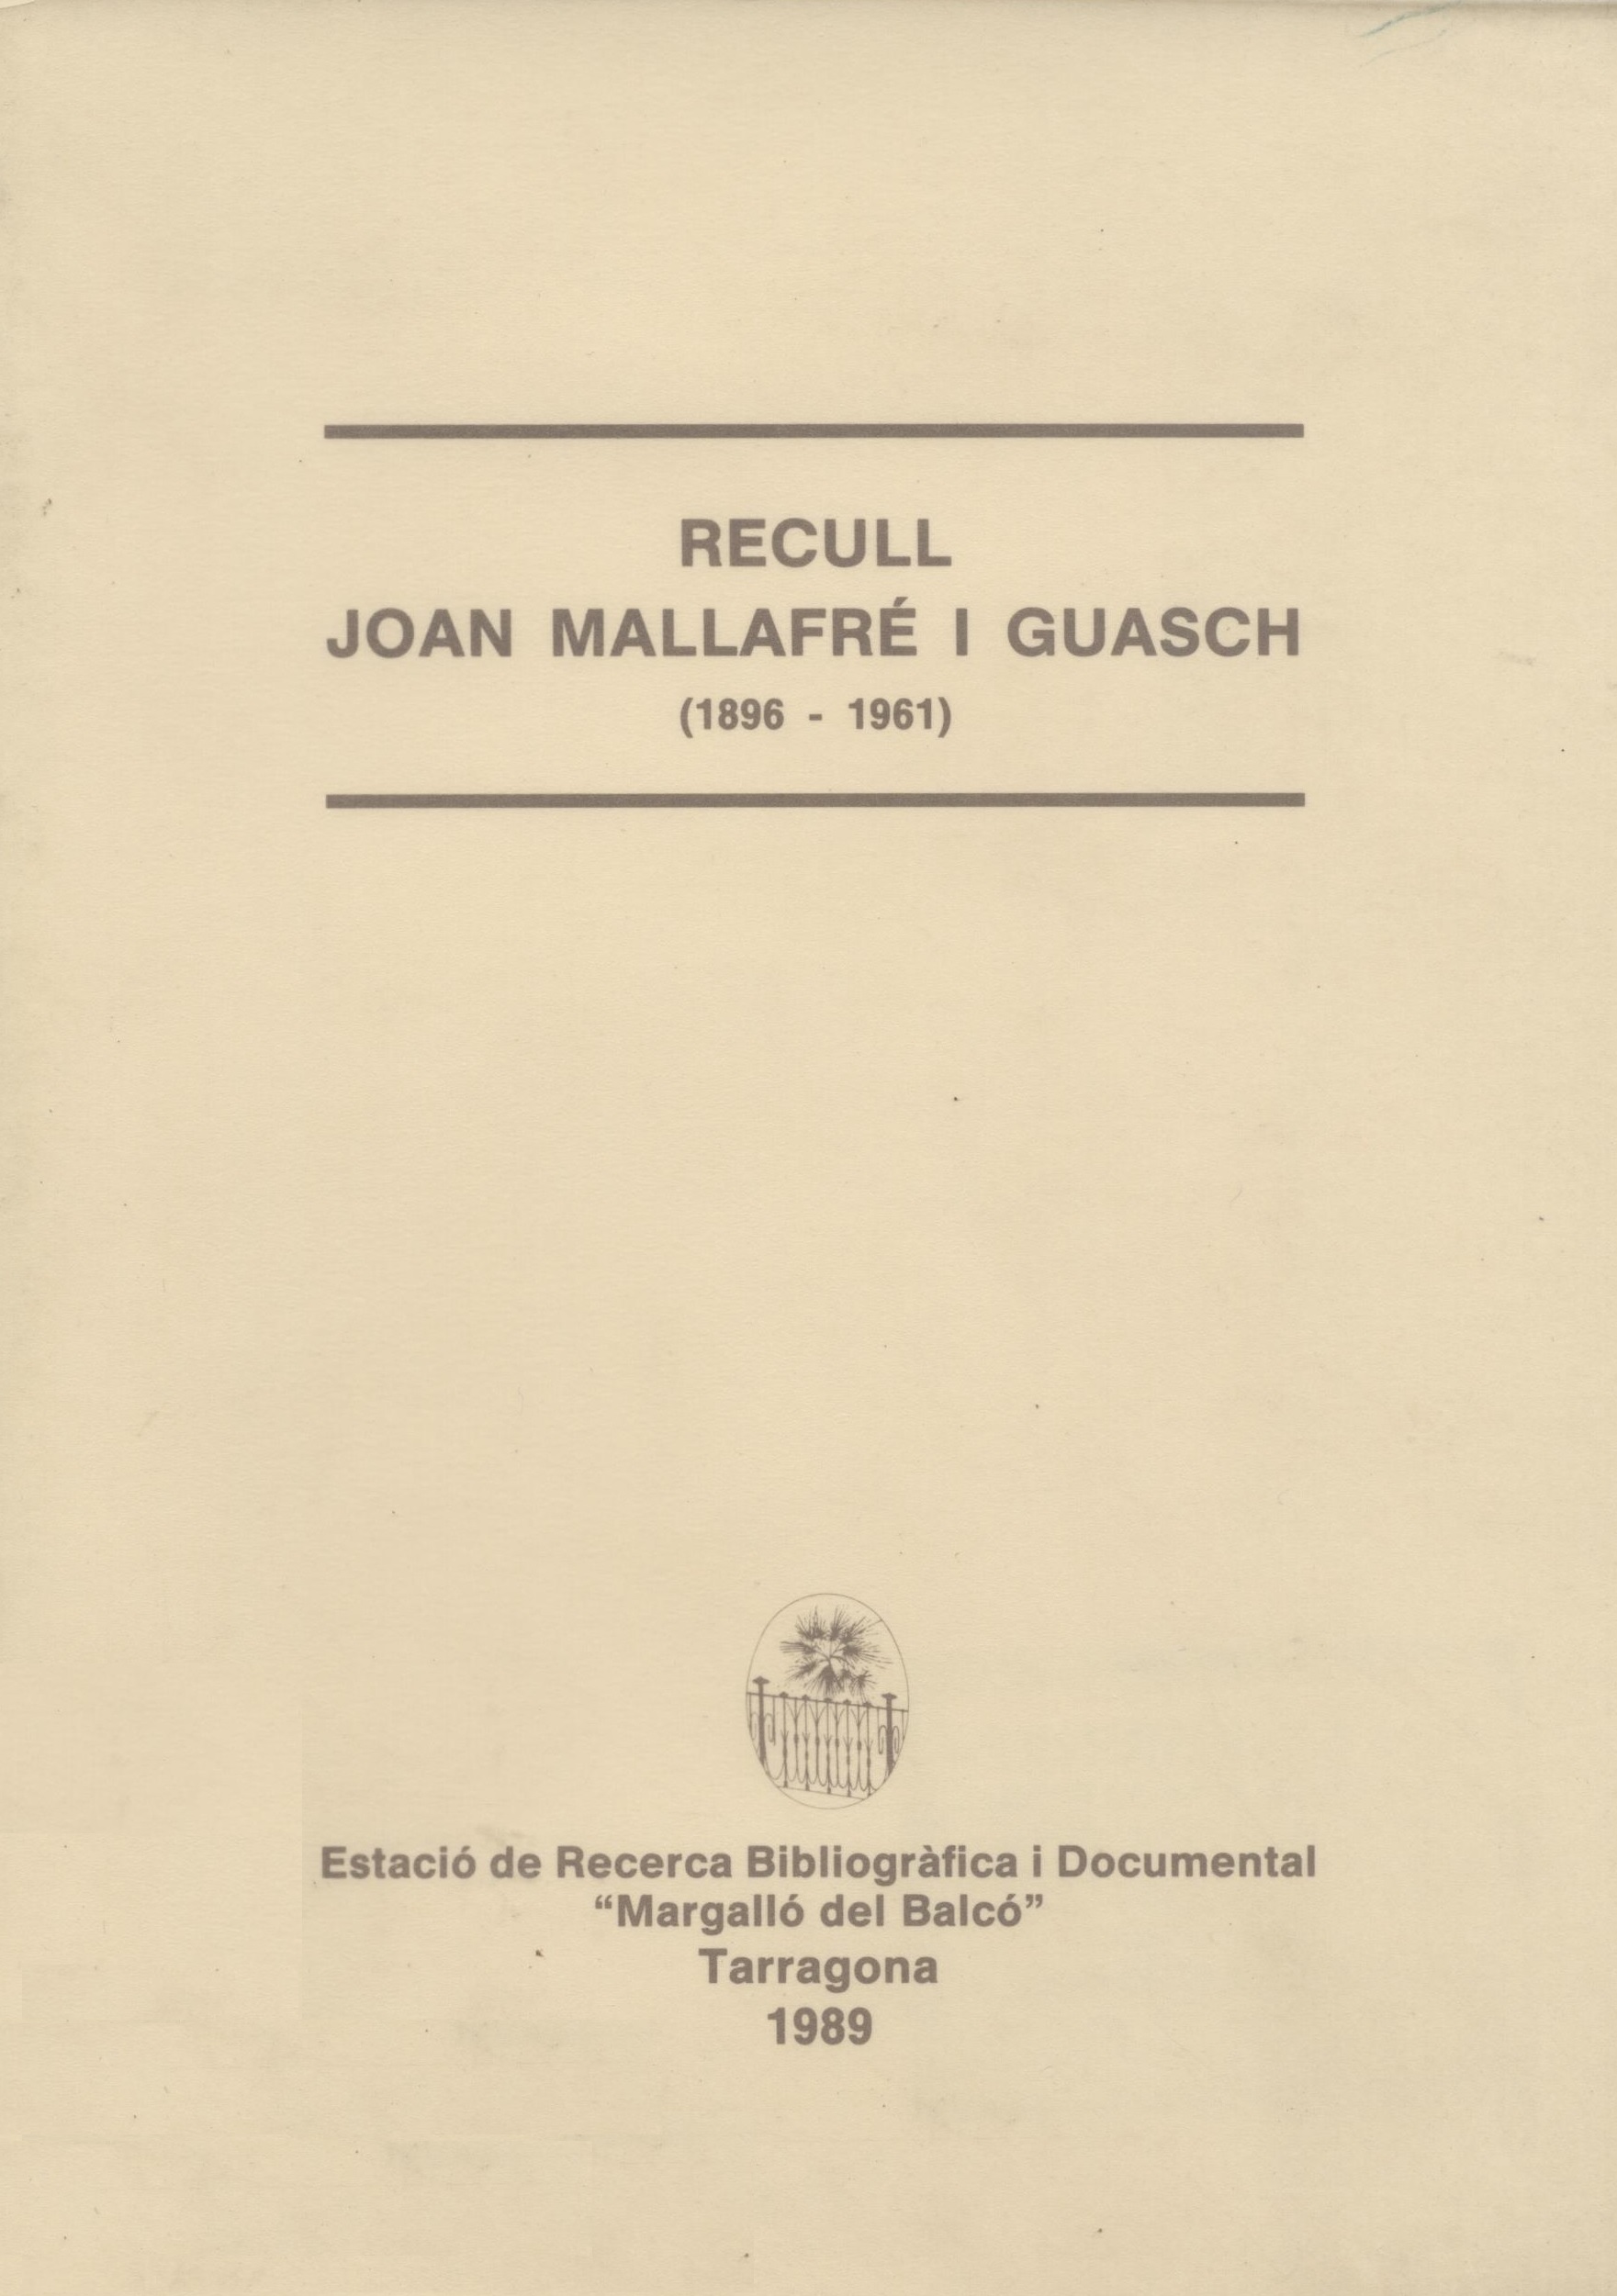 Imagen de portada del libro Recull Joan Mallafré i Guasch (1896-1961)